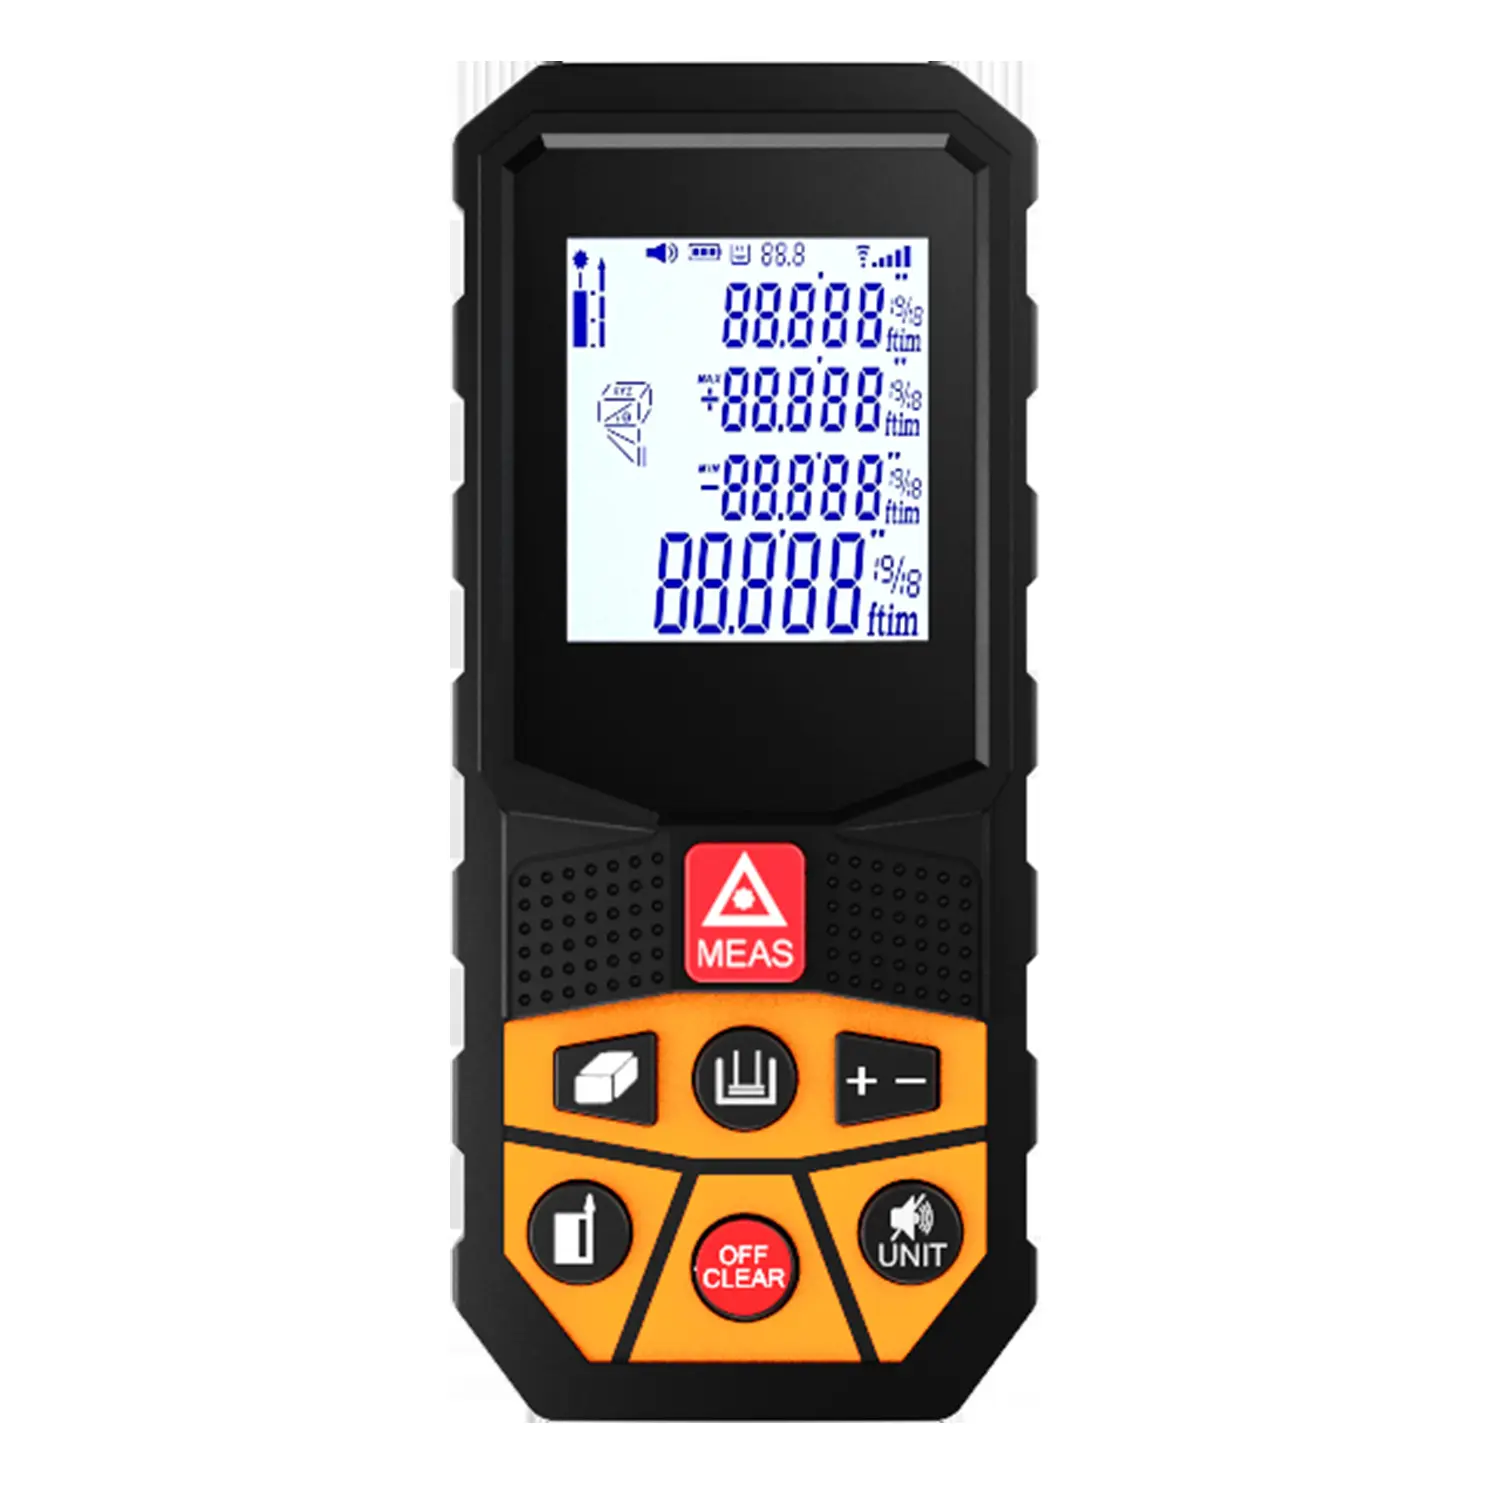 디지털 레이저 측정 40M/ft/in 단위 IP54 백라이트 레이저 거리 측정기 측정 거리 측정기